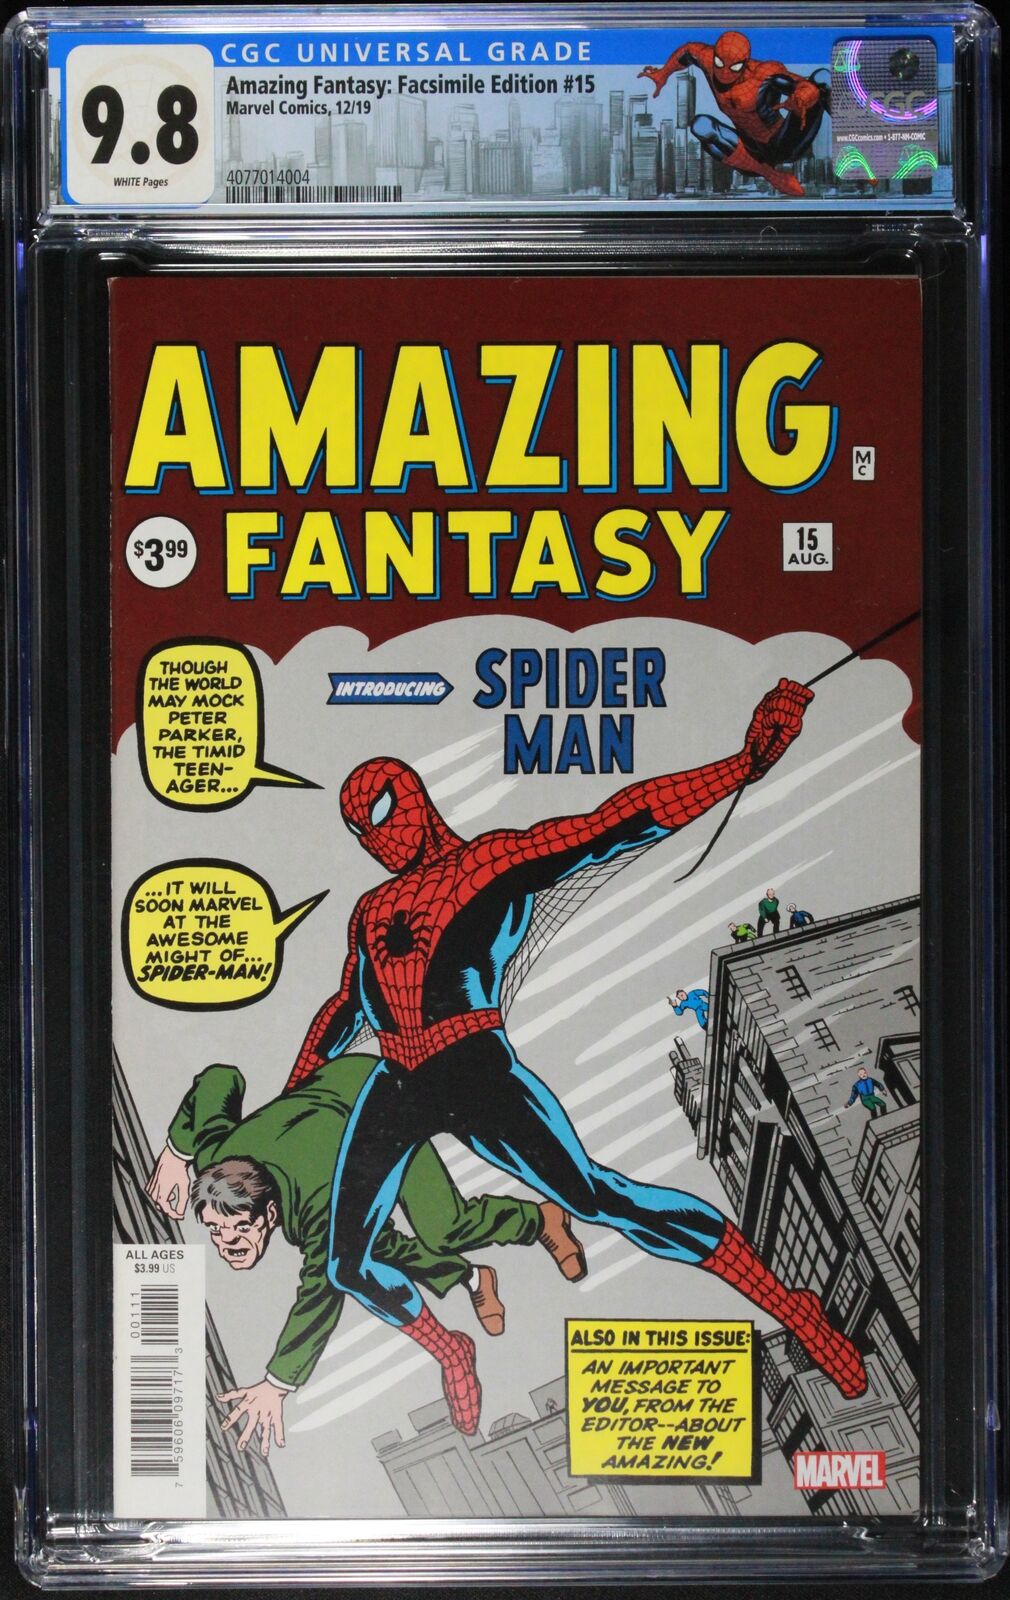 Amazing Fantasy: Facsimile Edition 15 CGC 9.8  Retired Spider-Man Label